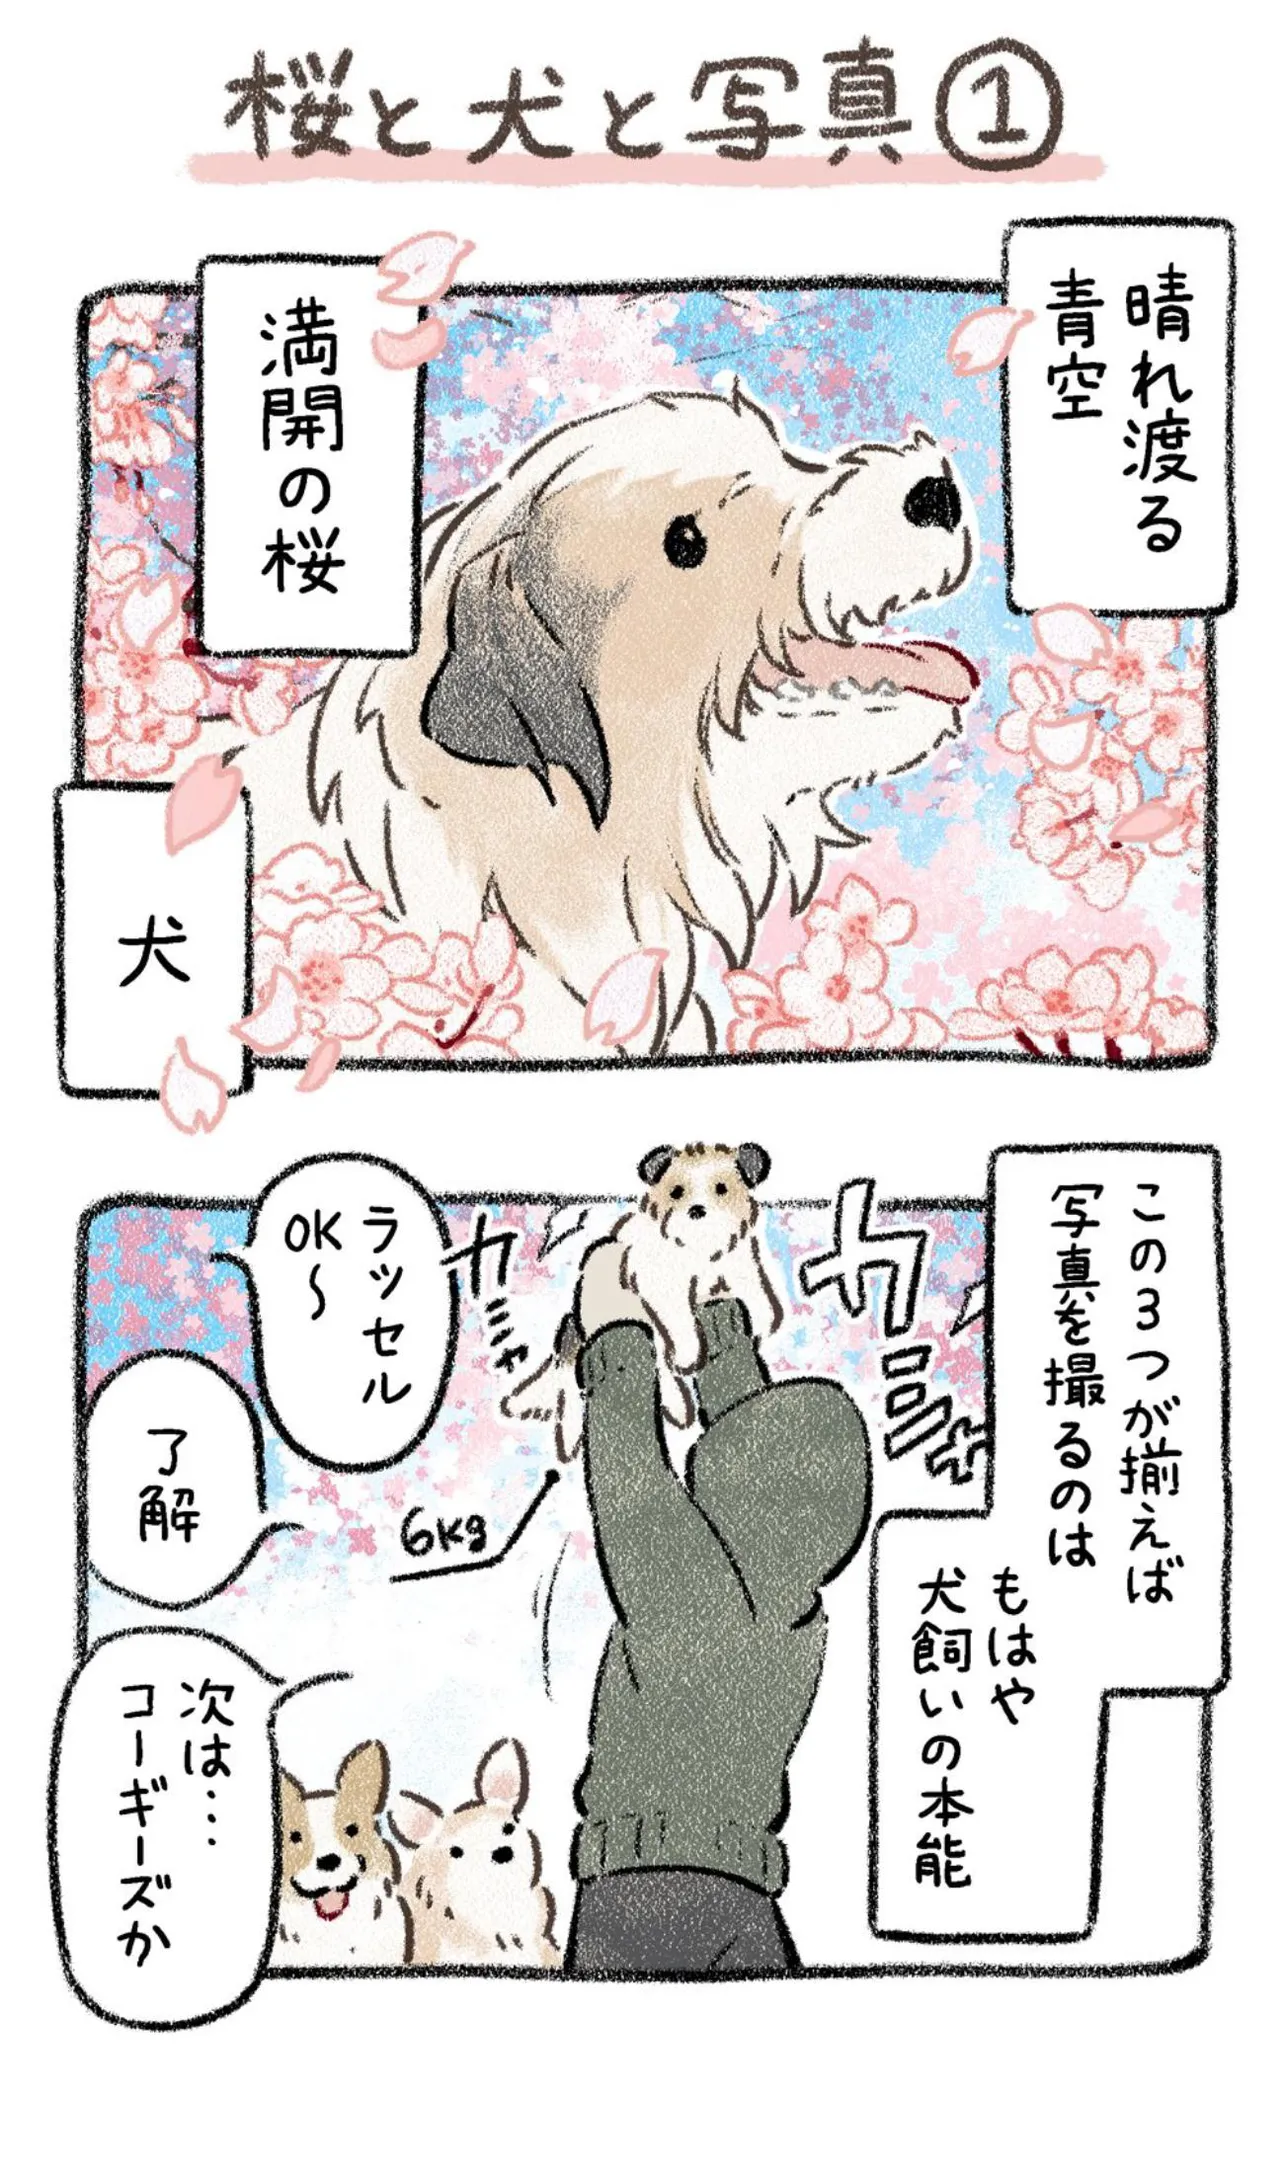 『桜と犬と写真』(1／11)